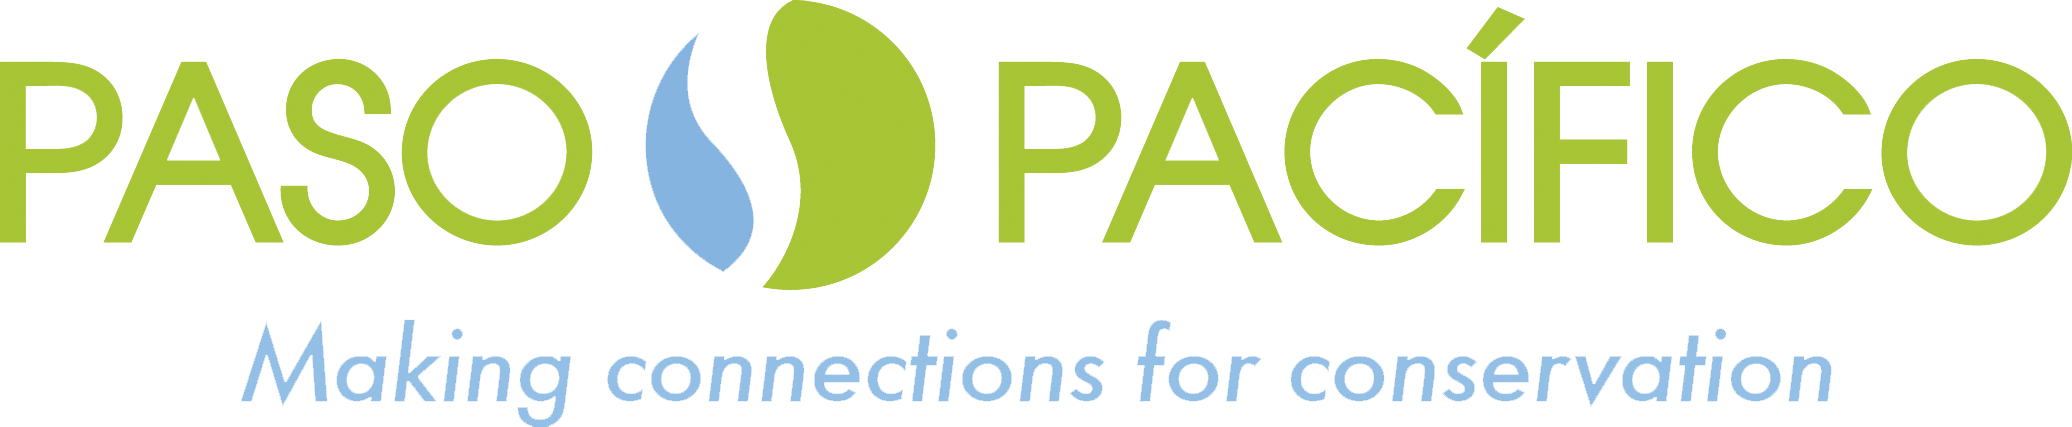 LogoPasoPacifico(1).png